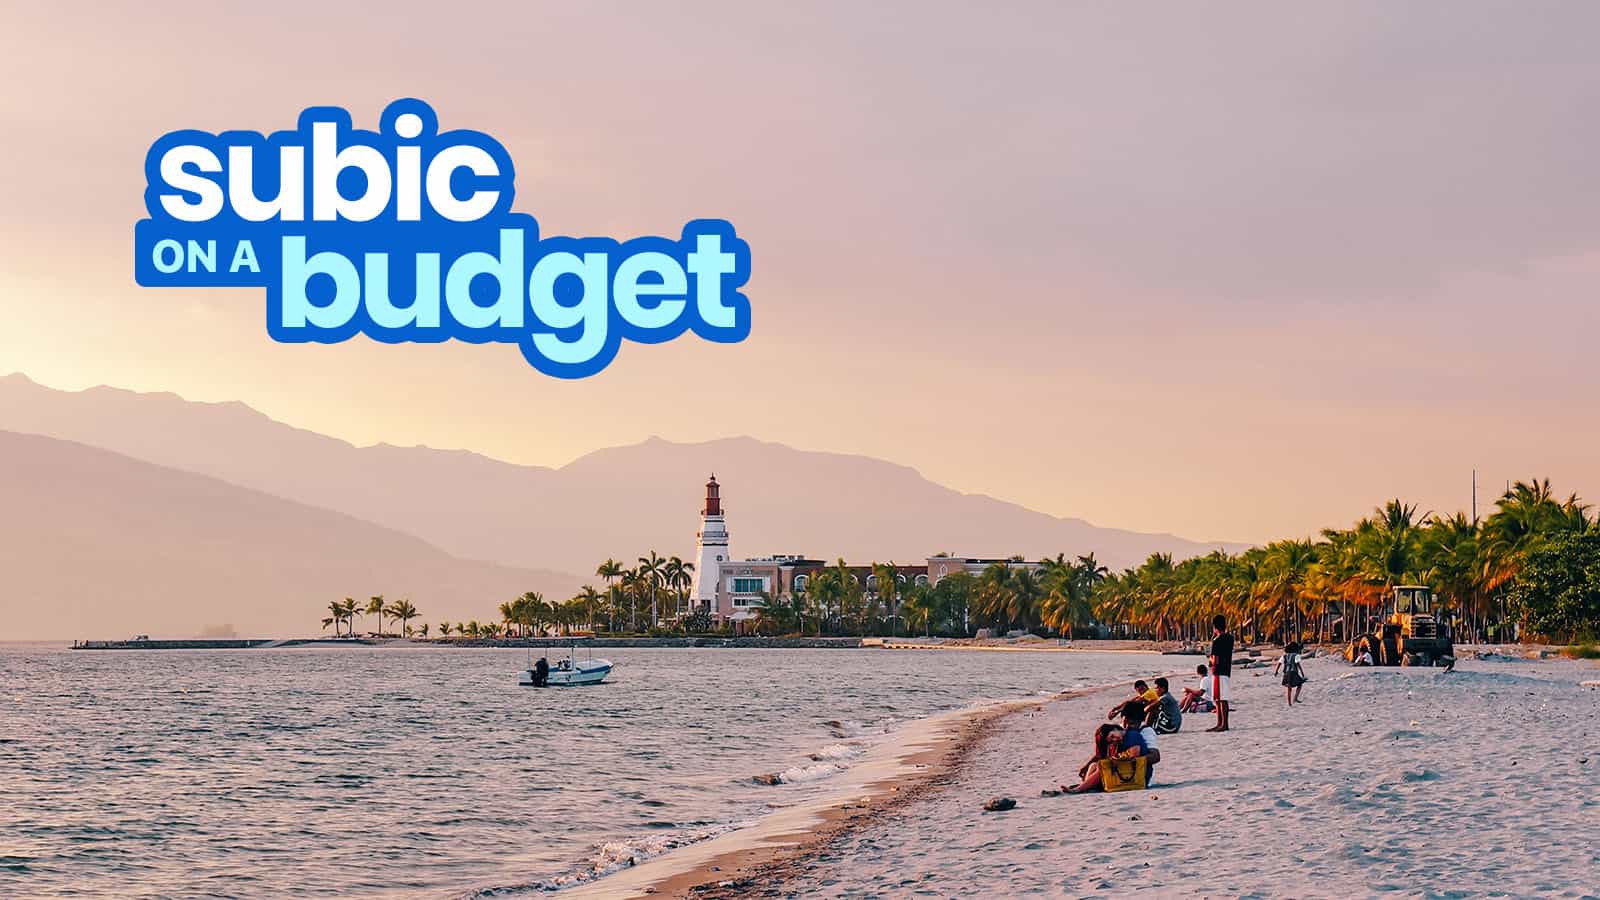 SUBIC旅游指南与预算行程